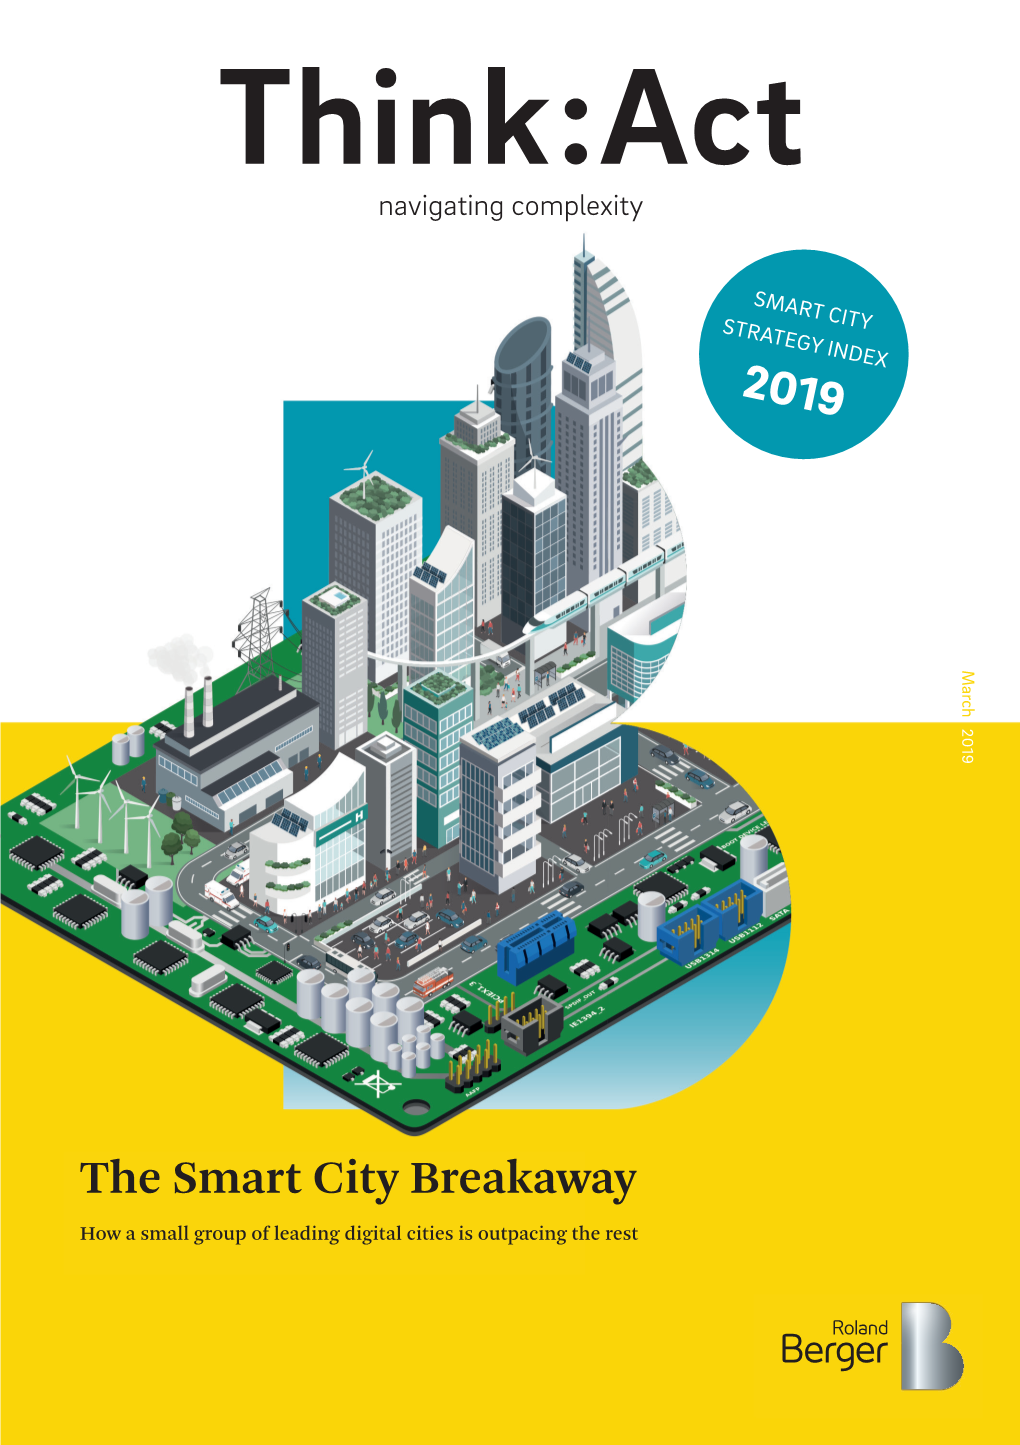 The Smart City Breakaway